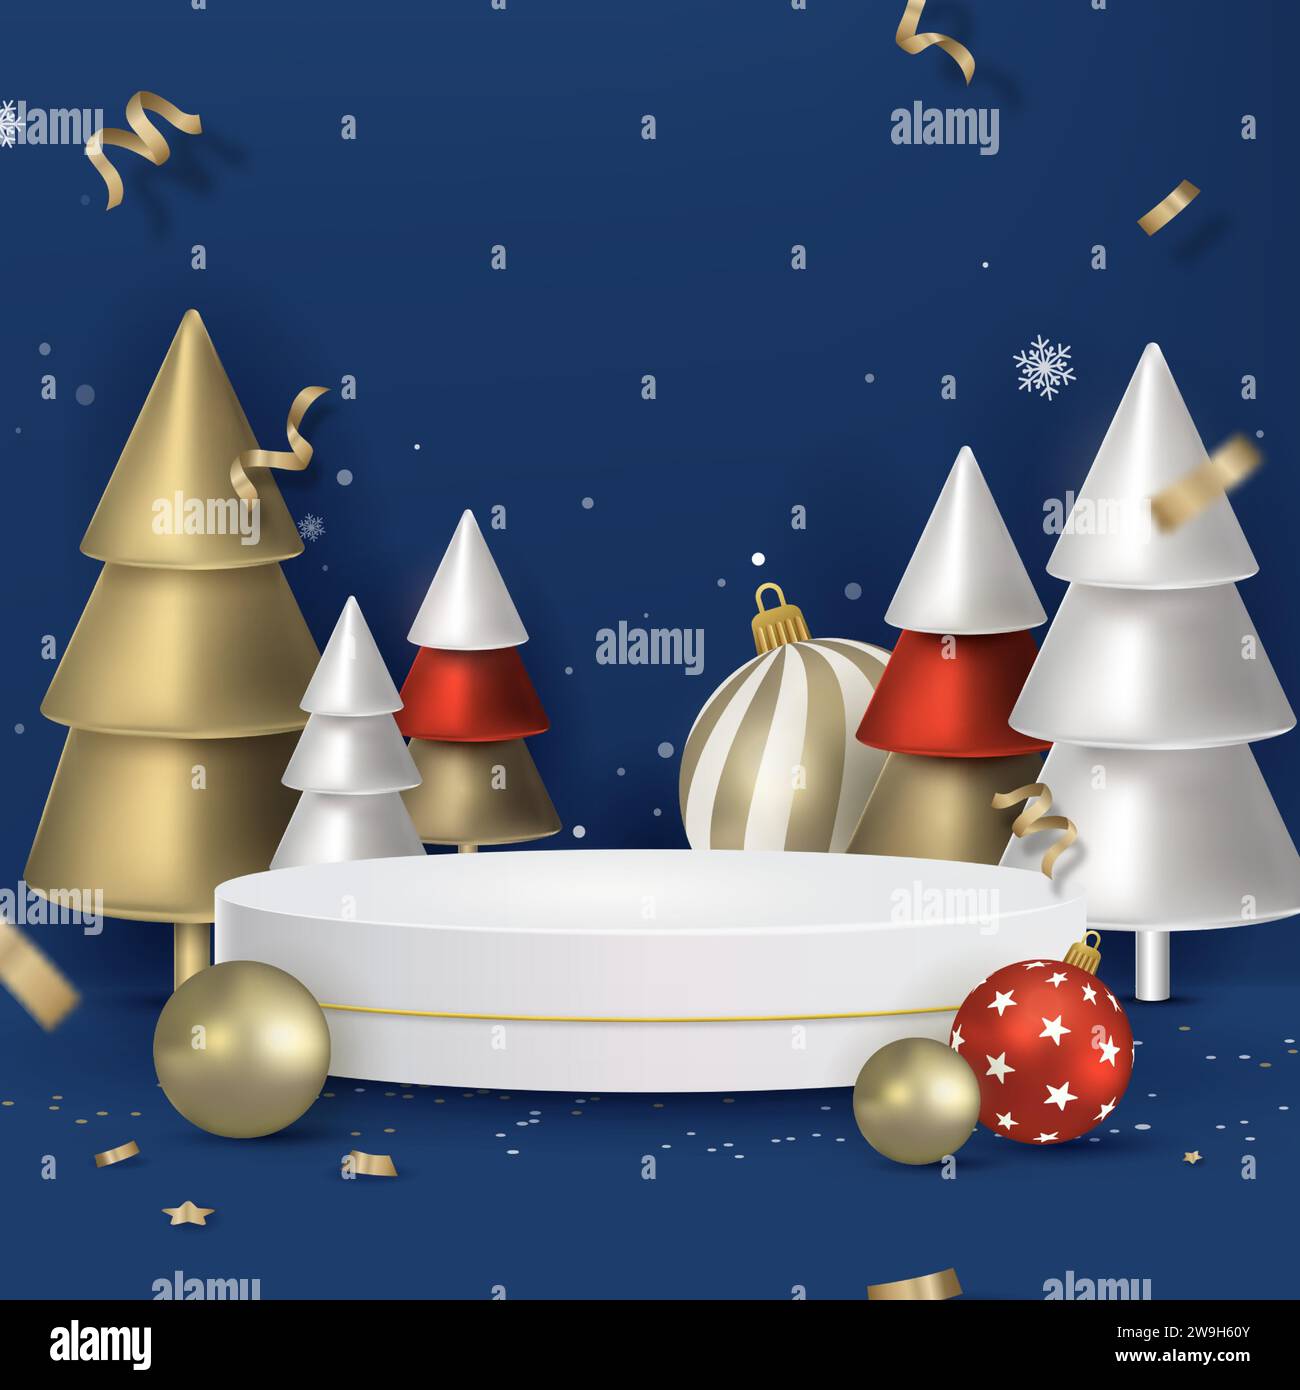 Conception ronde de podium de scène de Noël pour l'affichage de produit dans la décoration festive de fond bleu Illustration de Vecteur